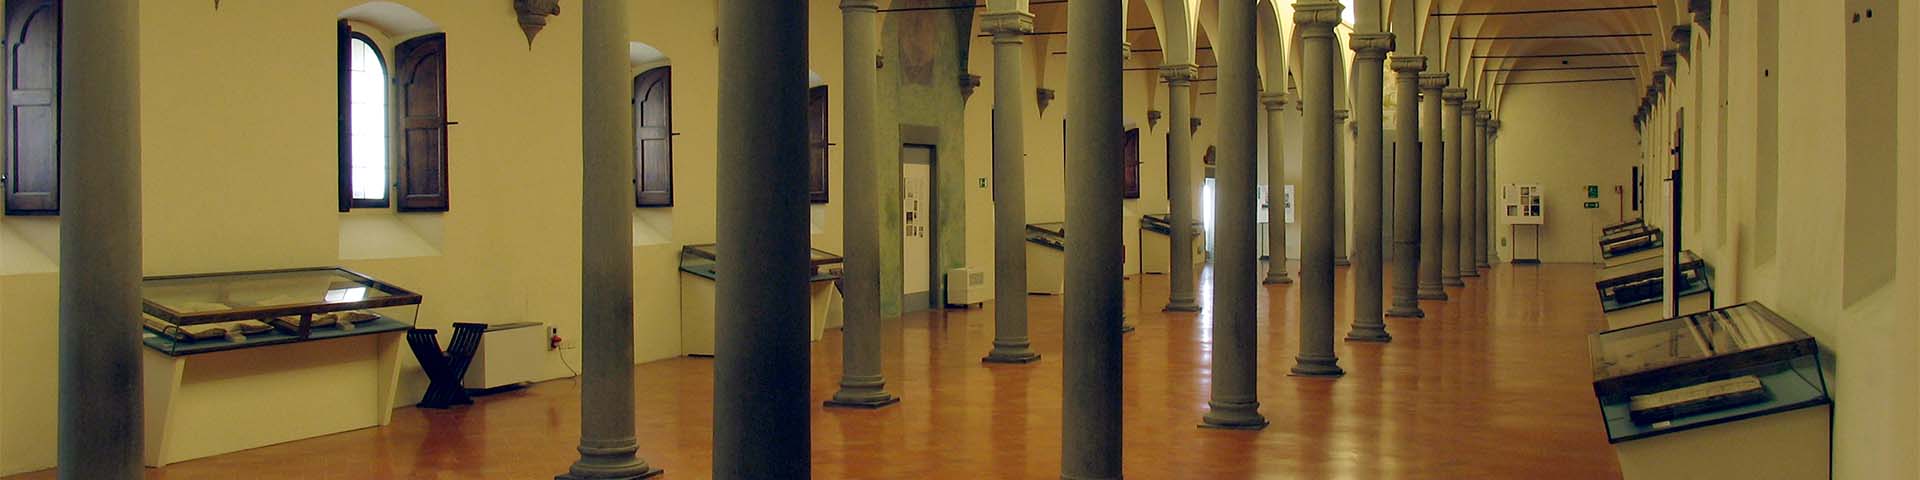 Biblioteca di San Marco